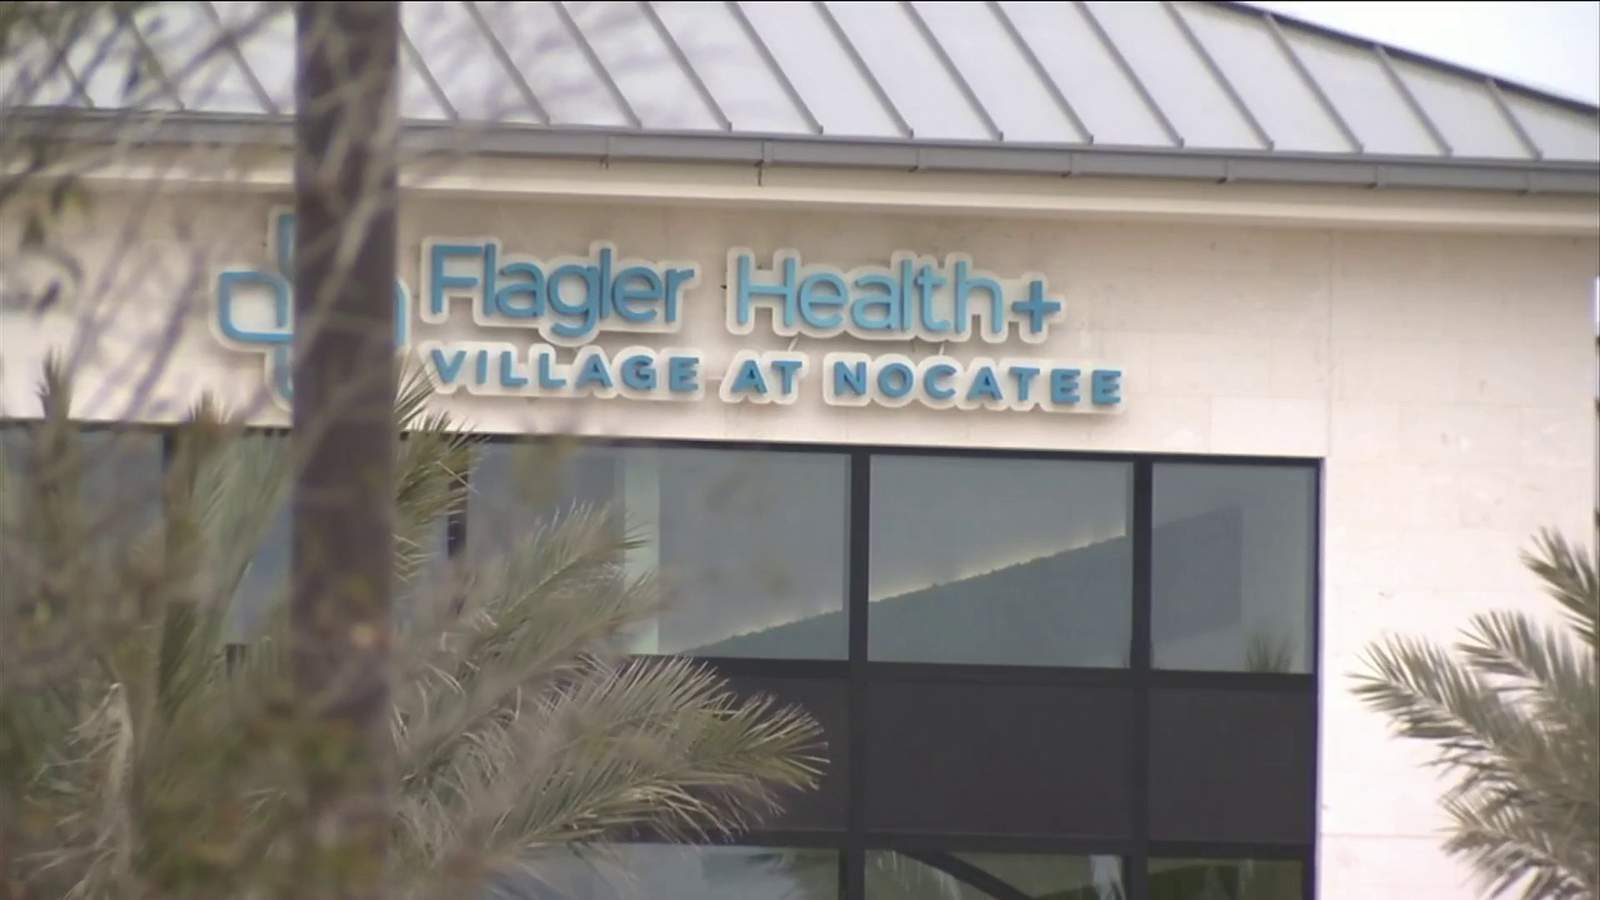 New Flagler Health+ senior center opening in St. Johns County